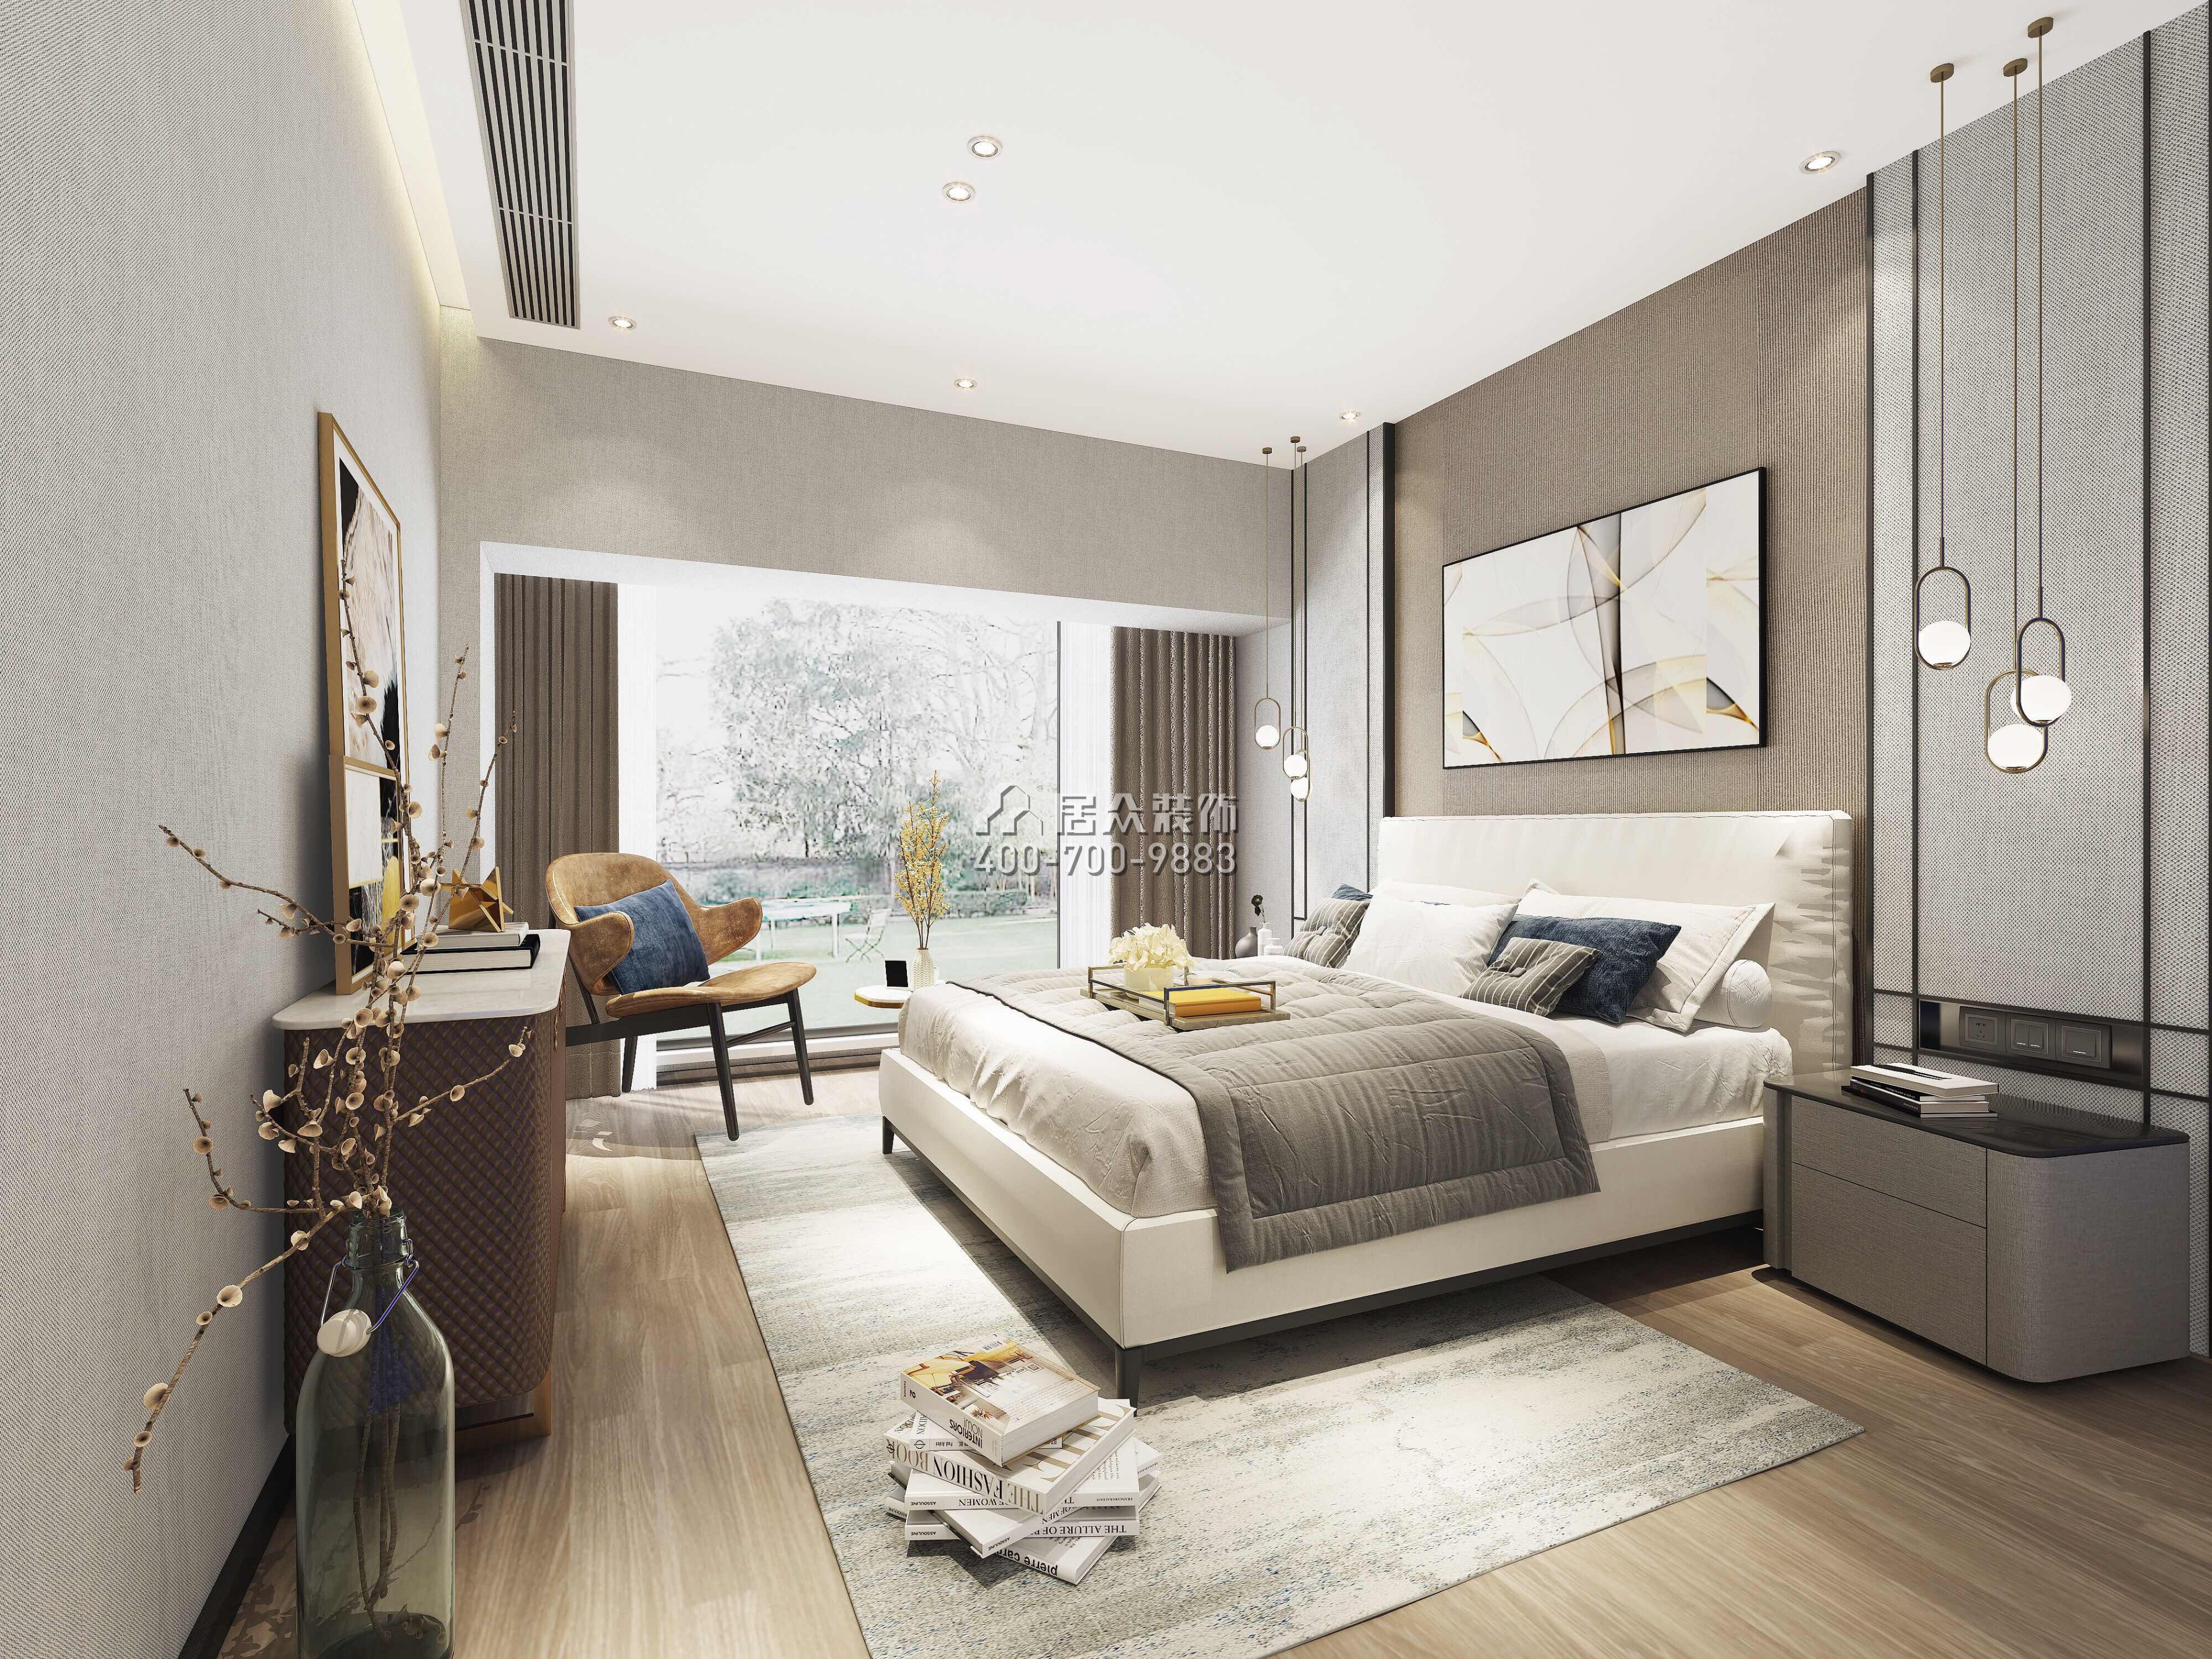 宏发世纪城130平方米现代简约风格平层户型卧室装修效果图